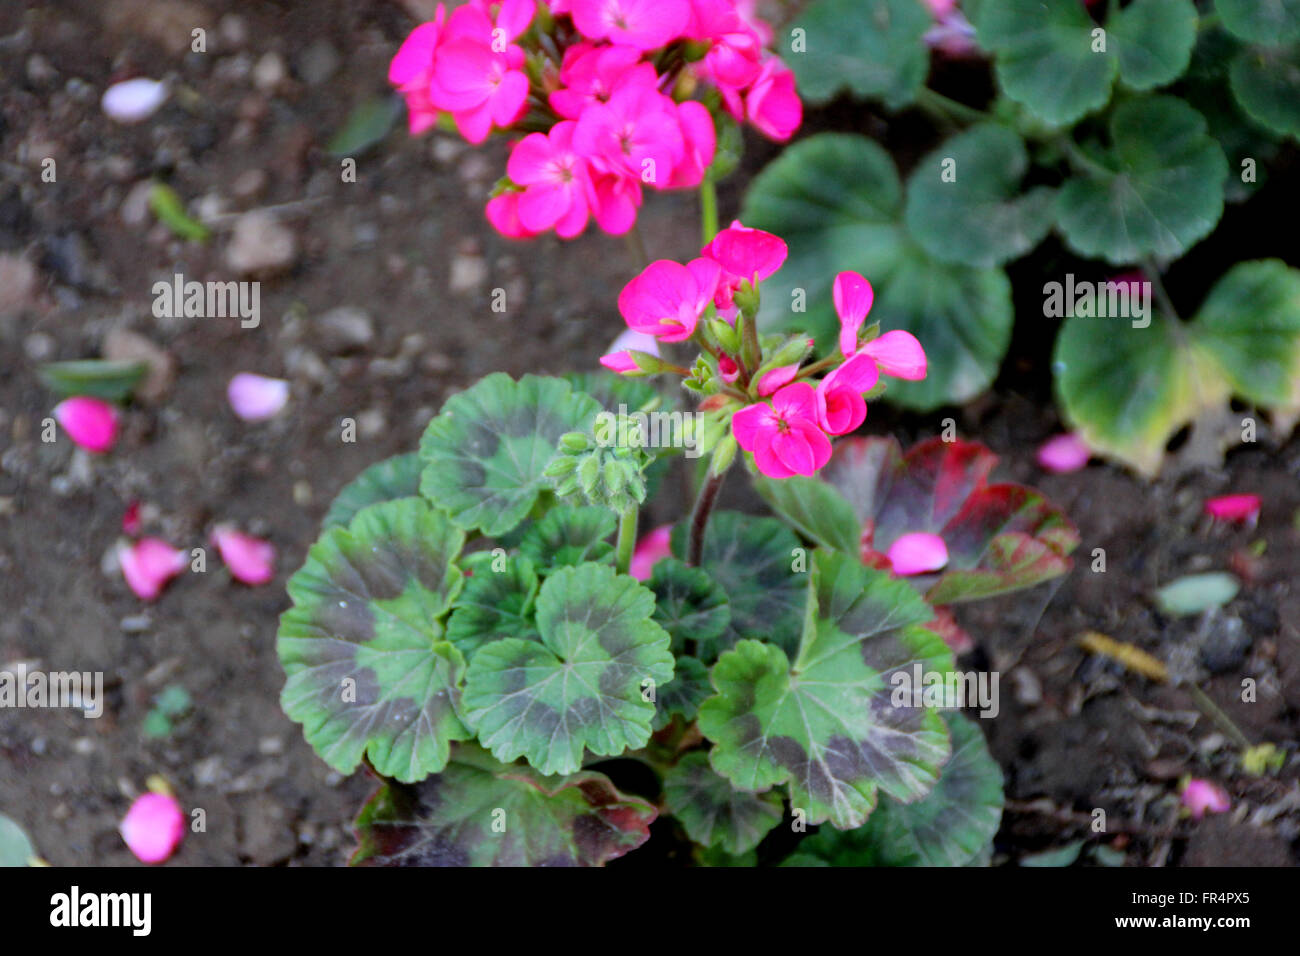 Pelargonium zonale, geranio, jardín pequeño arbusto ornamental con hojas cordiformes redondeado circular con parches de color púrpura rojizo Foto de stock